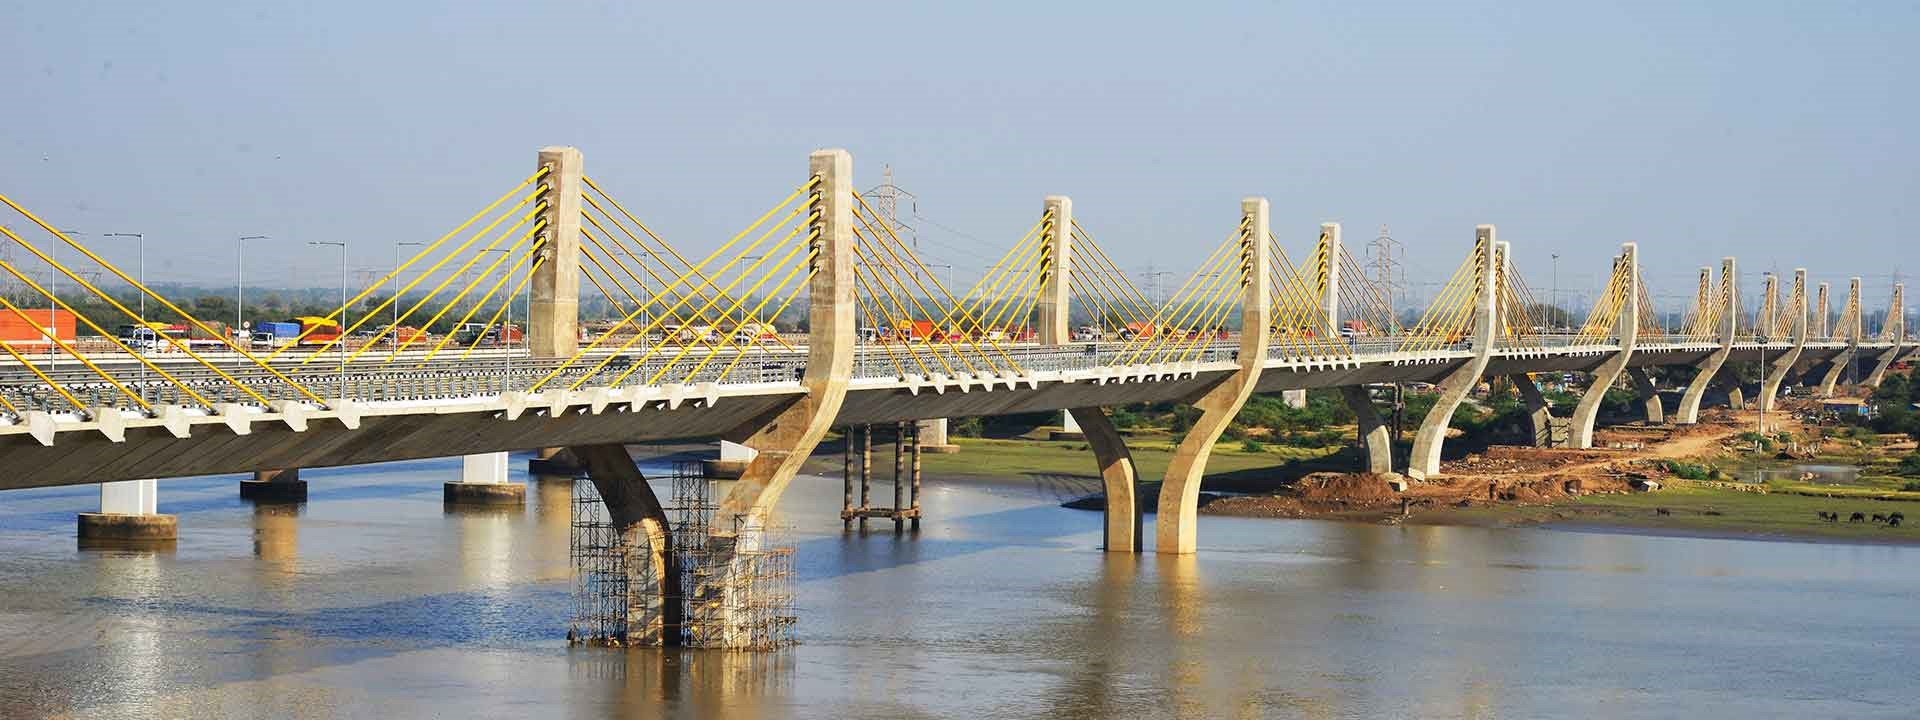 Third Narmada Bridge Gujarat- L&T Construction